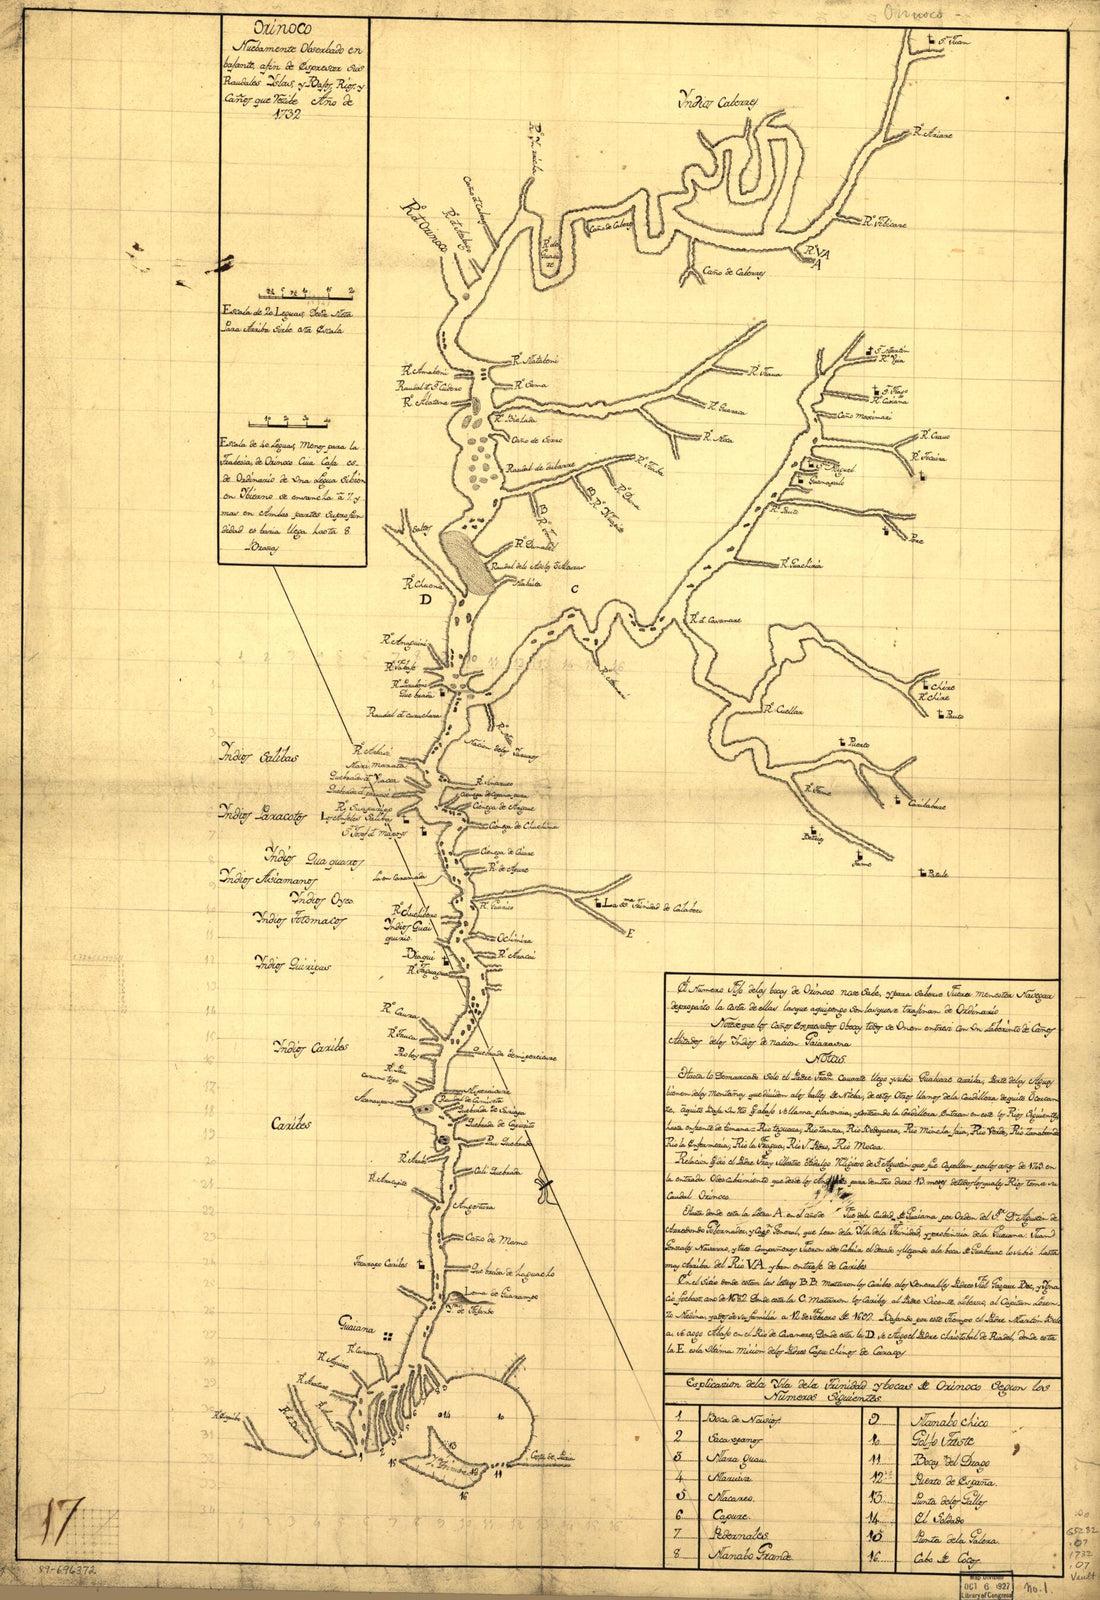 This old map of Orinoco, Nuebamente Obserbado En Bajante, Afin De Espresar Sus Raudales, Yslas Y Bajos, Rios Y Caños Que Vezibe : Año from 1732 was created by  in 1732